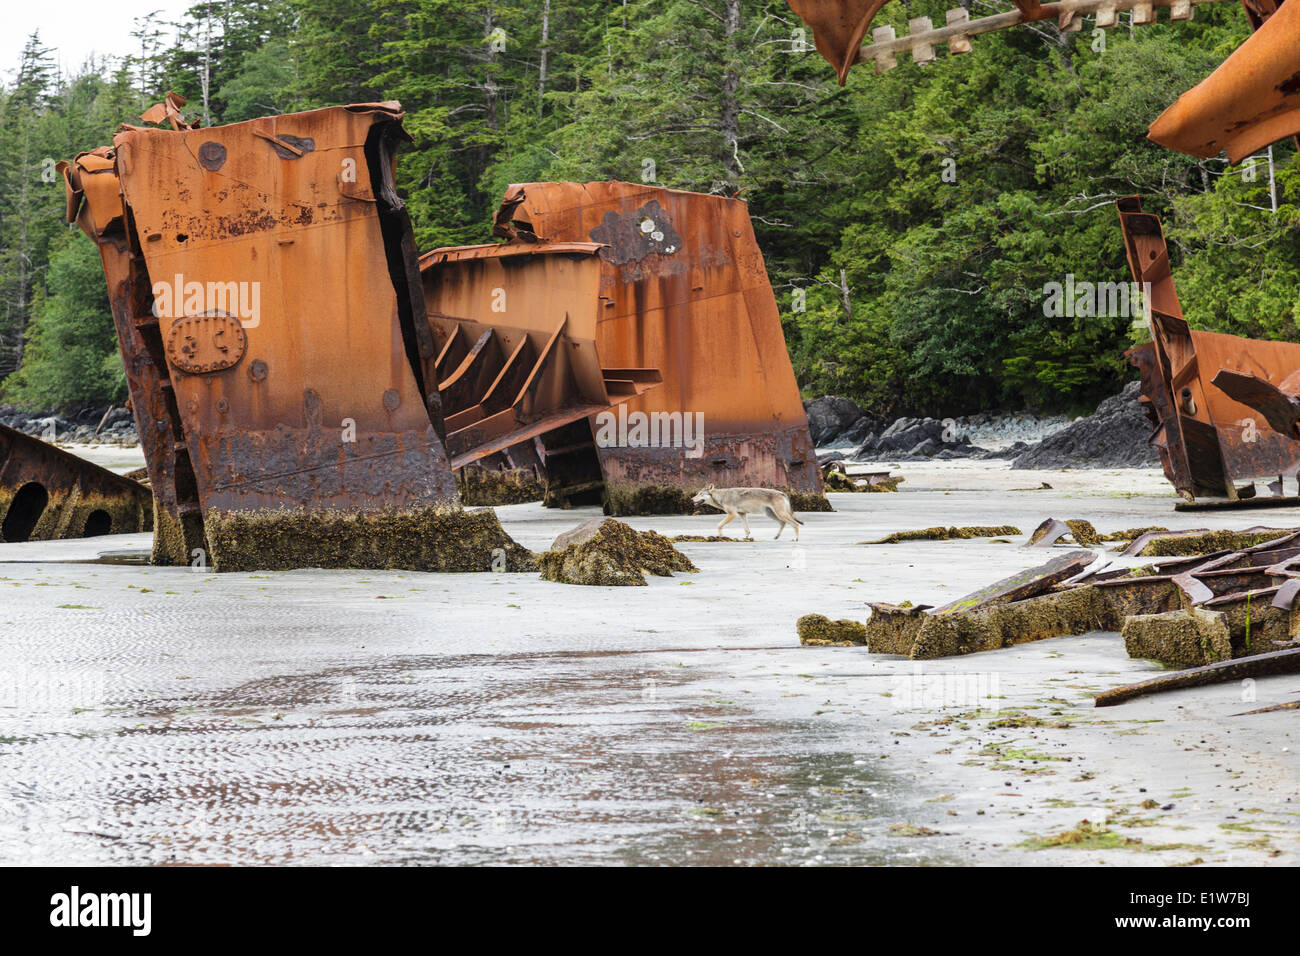 Ein einsamer Timber Wolf (Canus Lupus) streift unter den Überresten einer alten Schiffswrack Louie Bay auf Nootka Island in British Columbia Kanada. Stockfoto